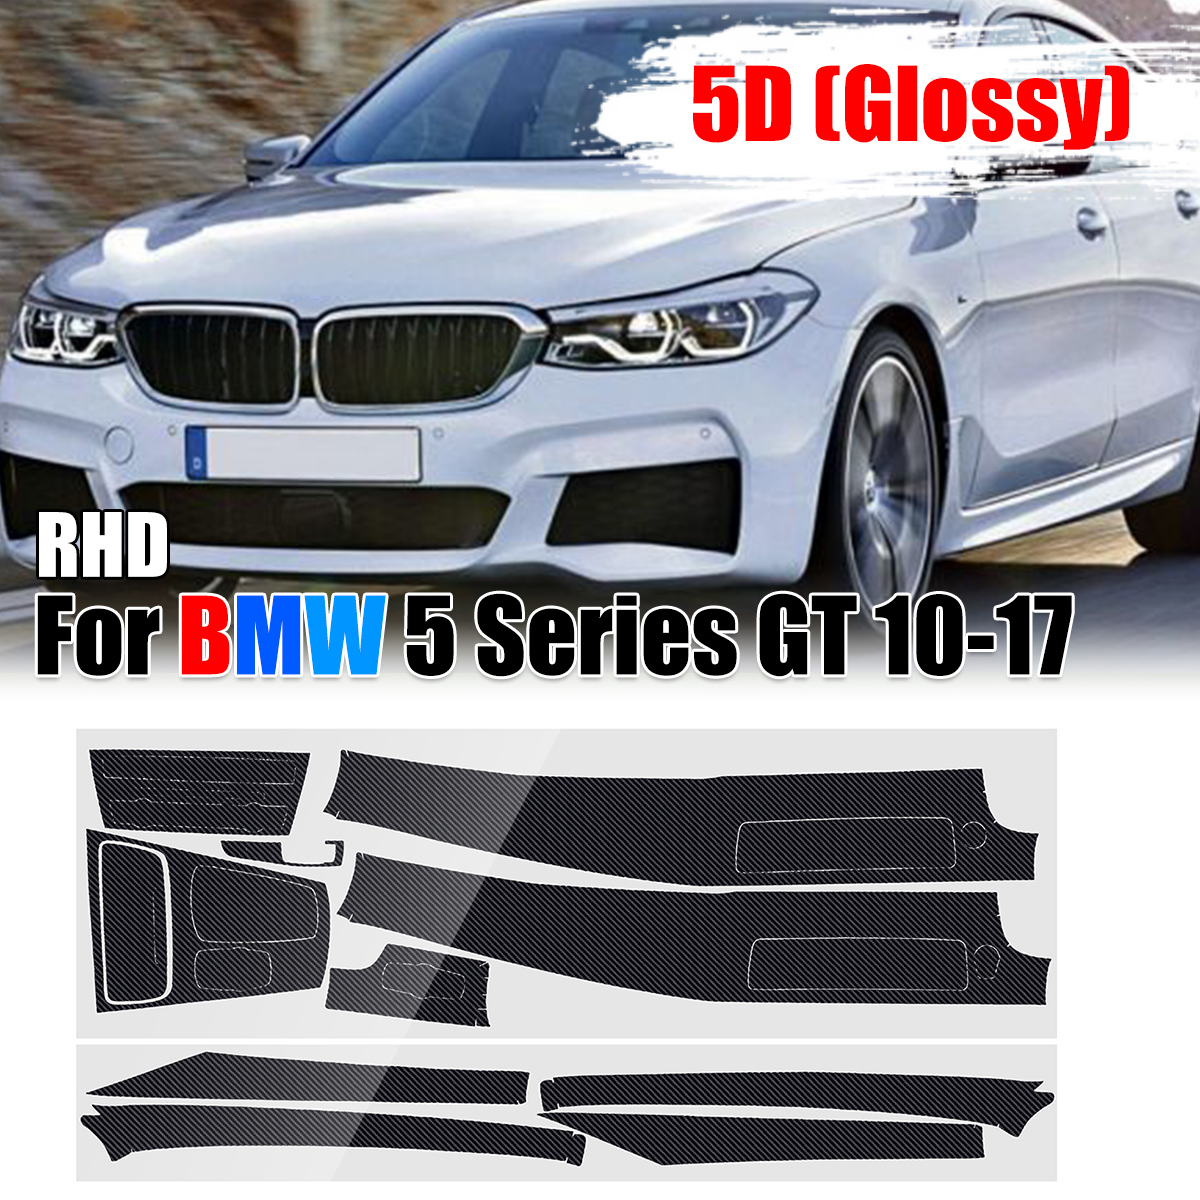 RHD Carbon Fiber Interior Sticker Vinyl for BMW 5 Series GT 2010-2017